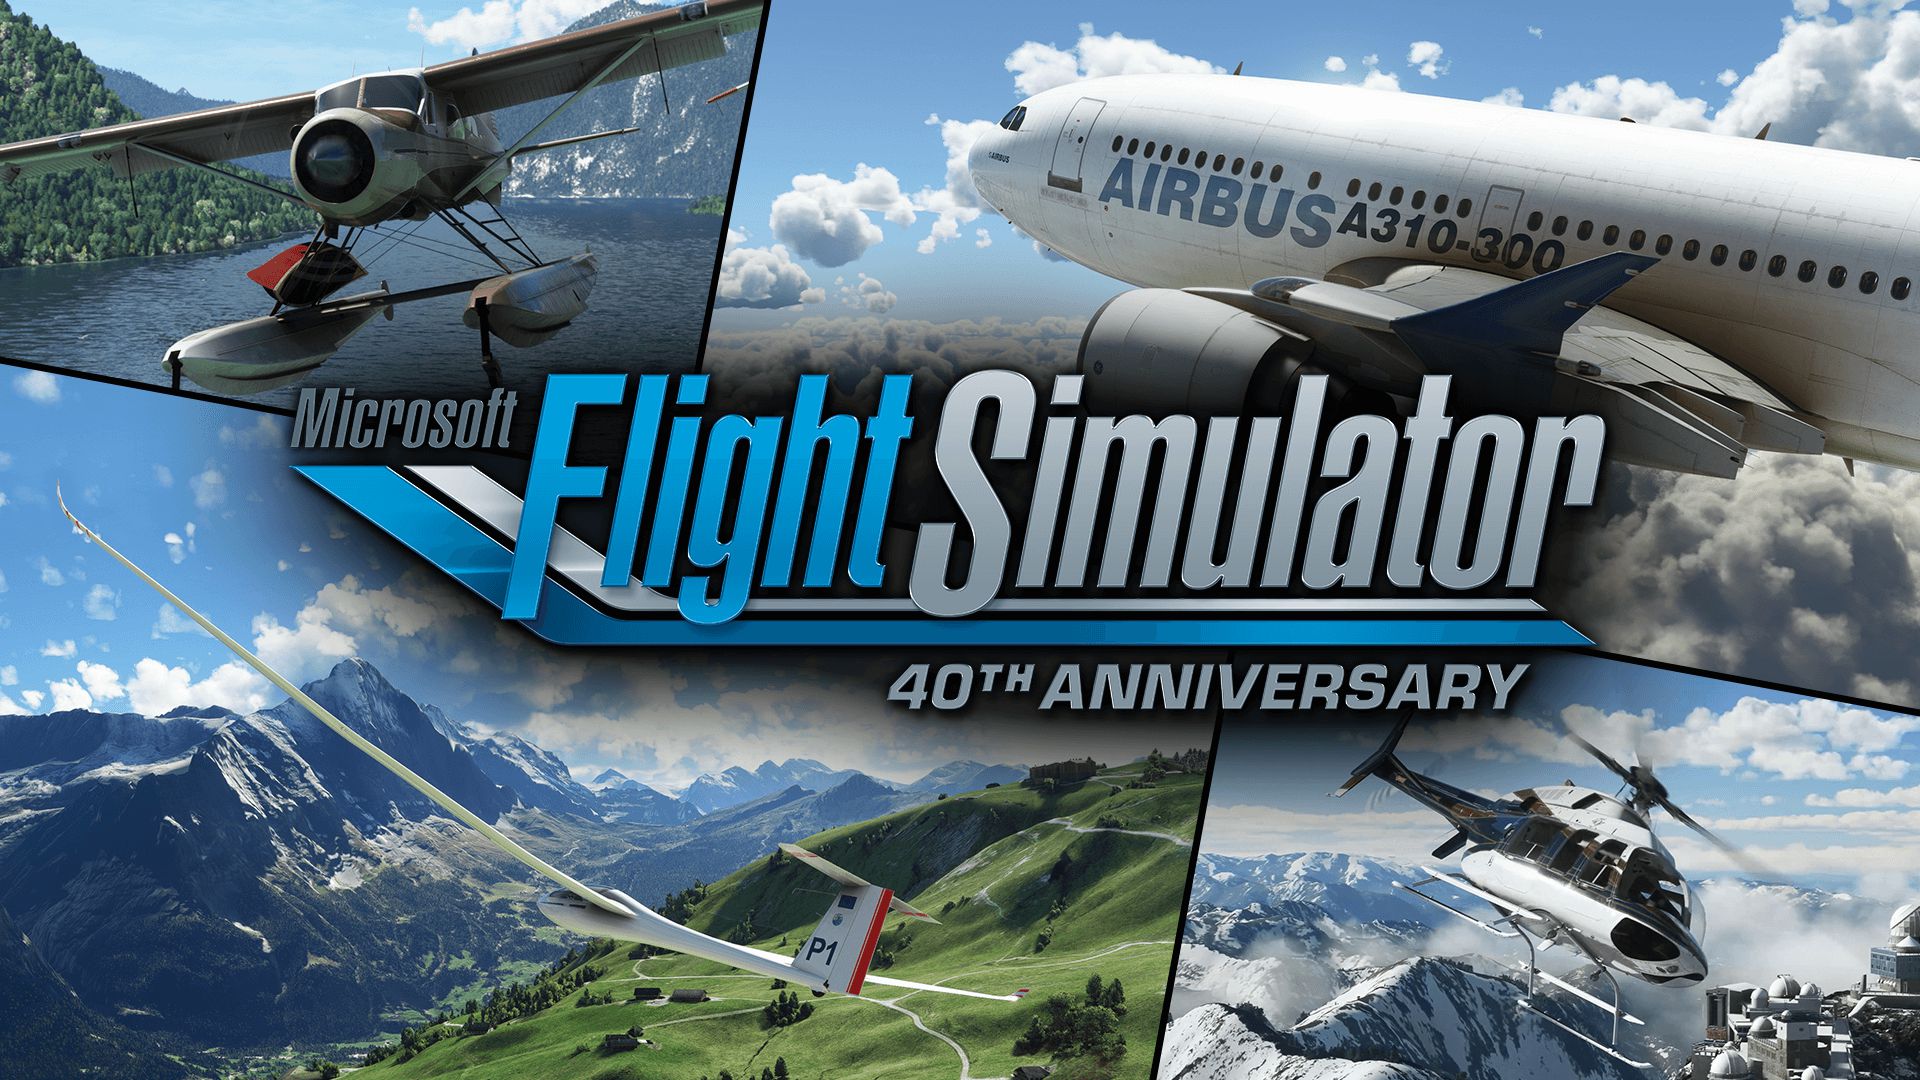 Análisis de Microsoft Flight Simulator 2020, una experiencia de